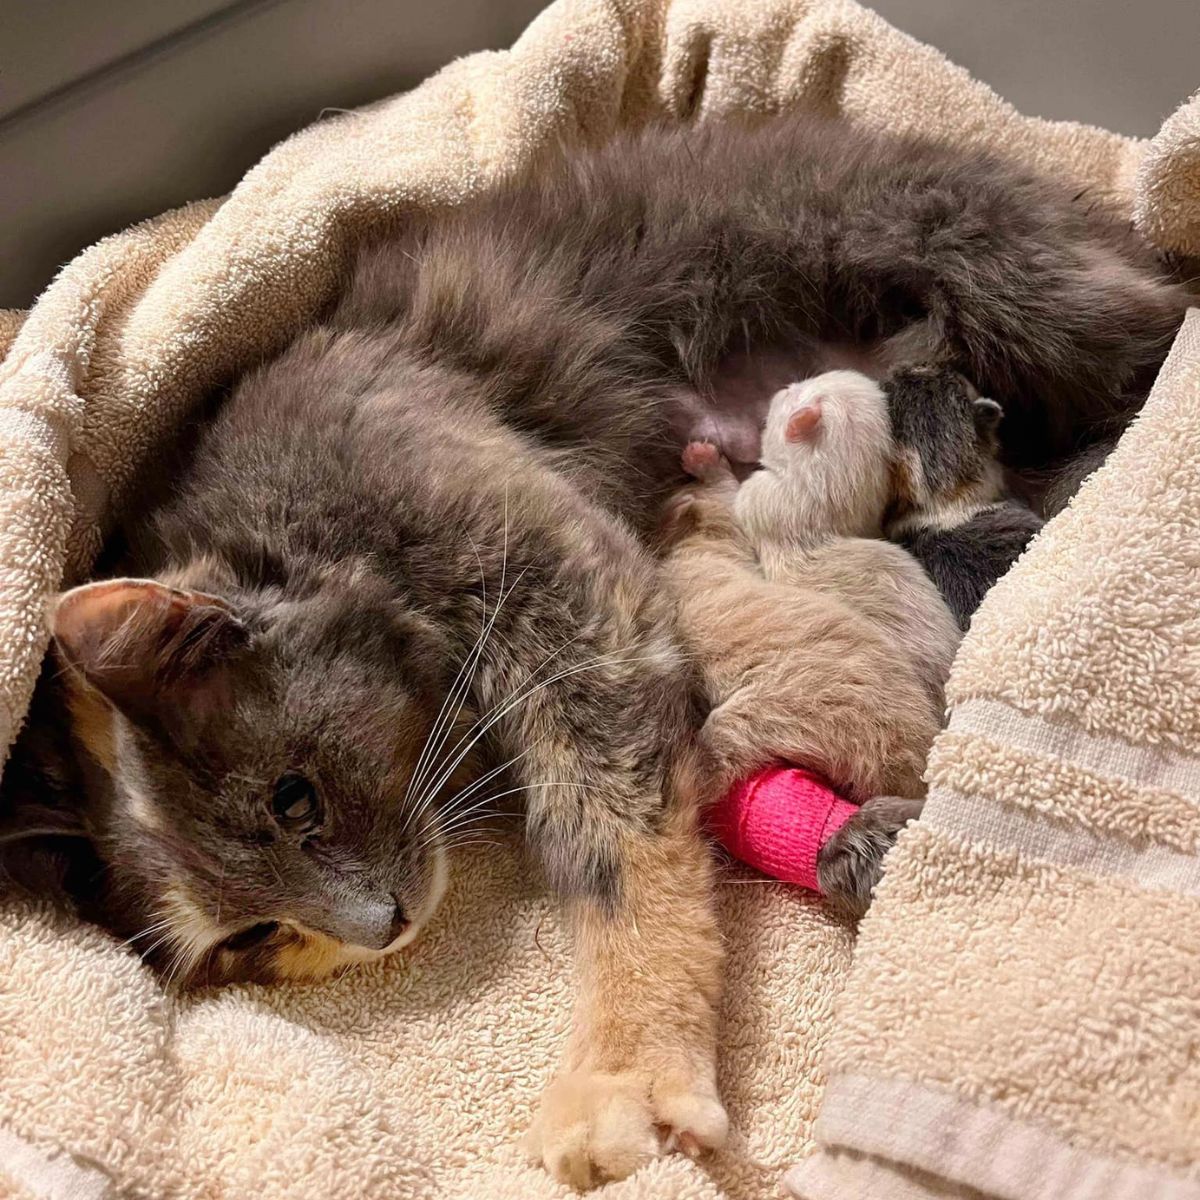 cat breastfeeding newborn kittens